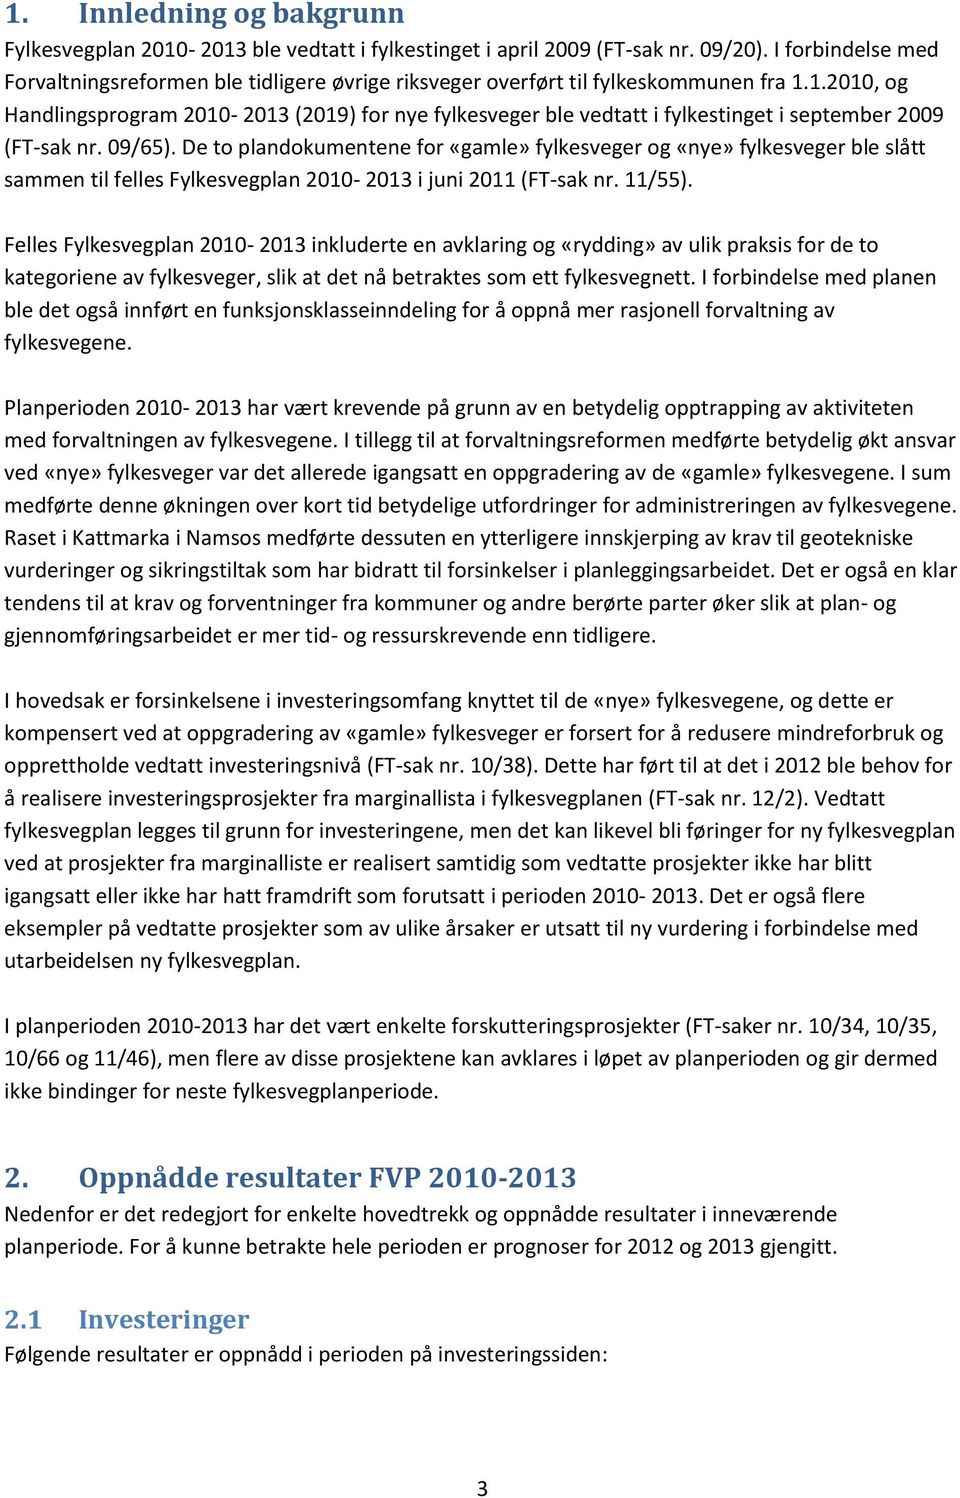 1.2010, og Handlingsprogram 2010-2013 (2019) for nye fylkesveger ble vedtatt i fylkestinget i september 2009 (FT-sak nr. 09/65).